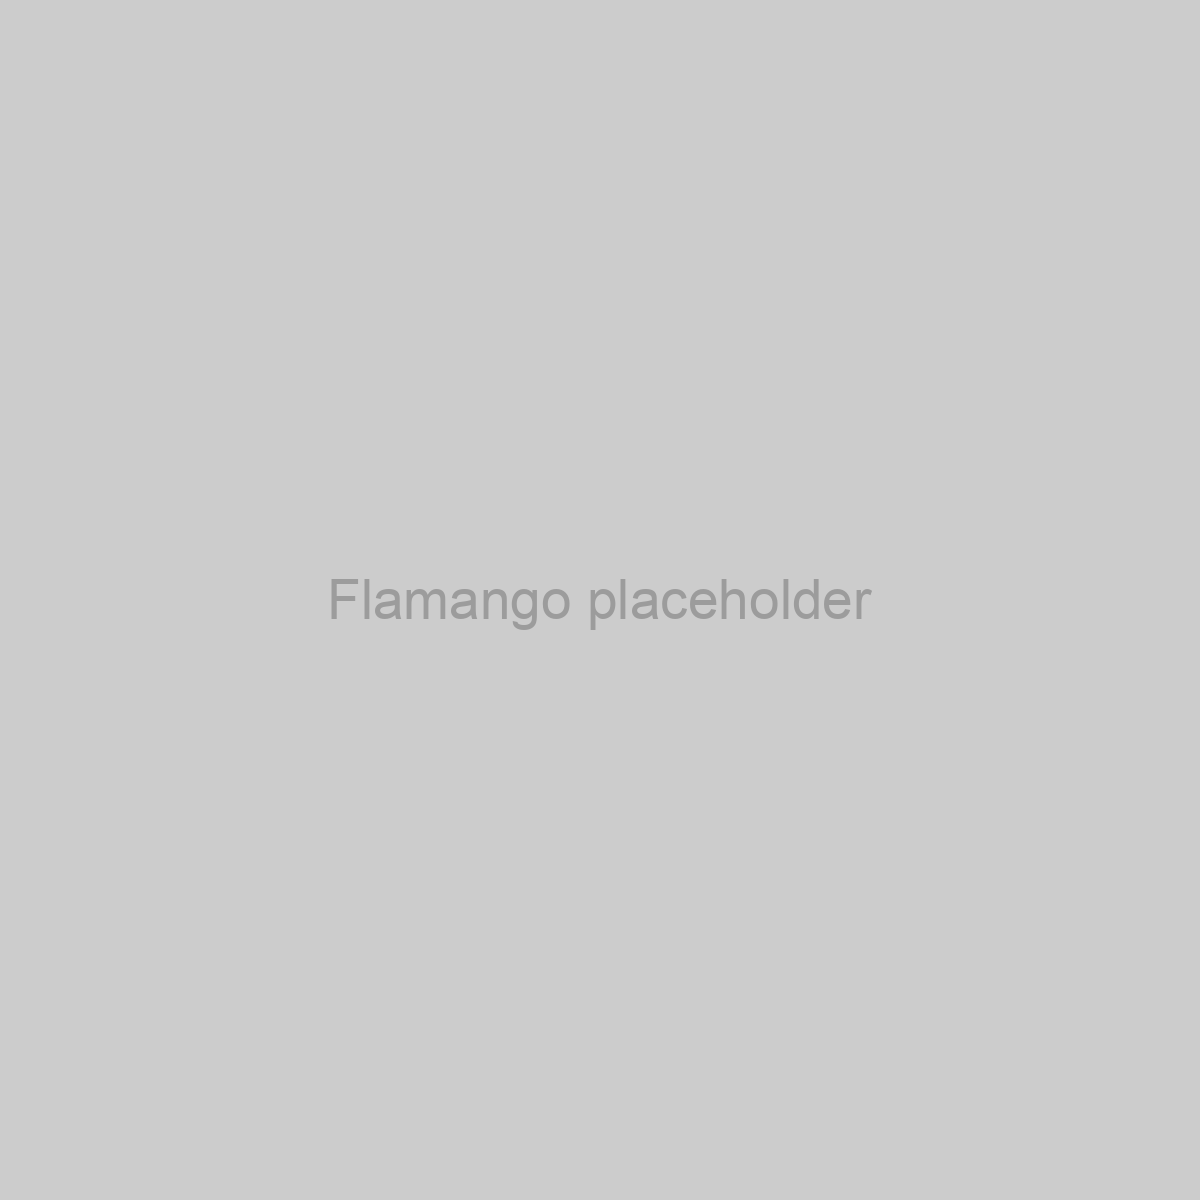 Flamango Placeholder Image